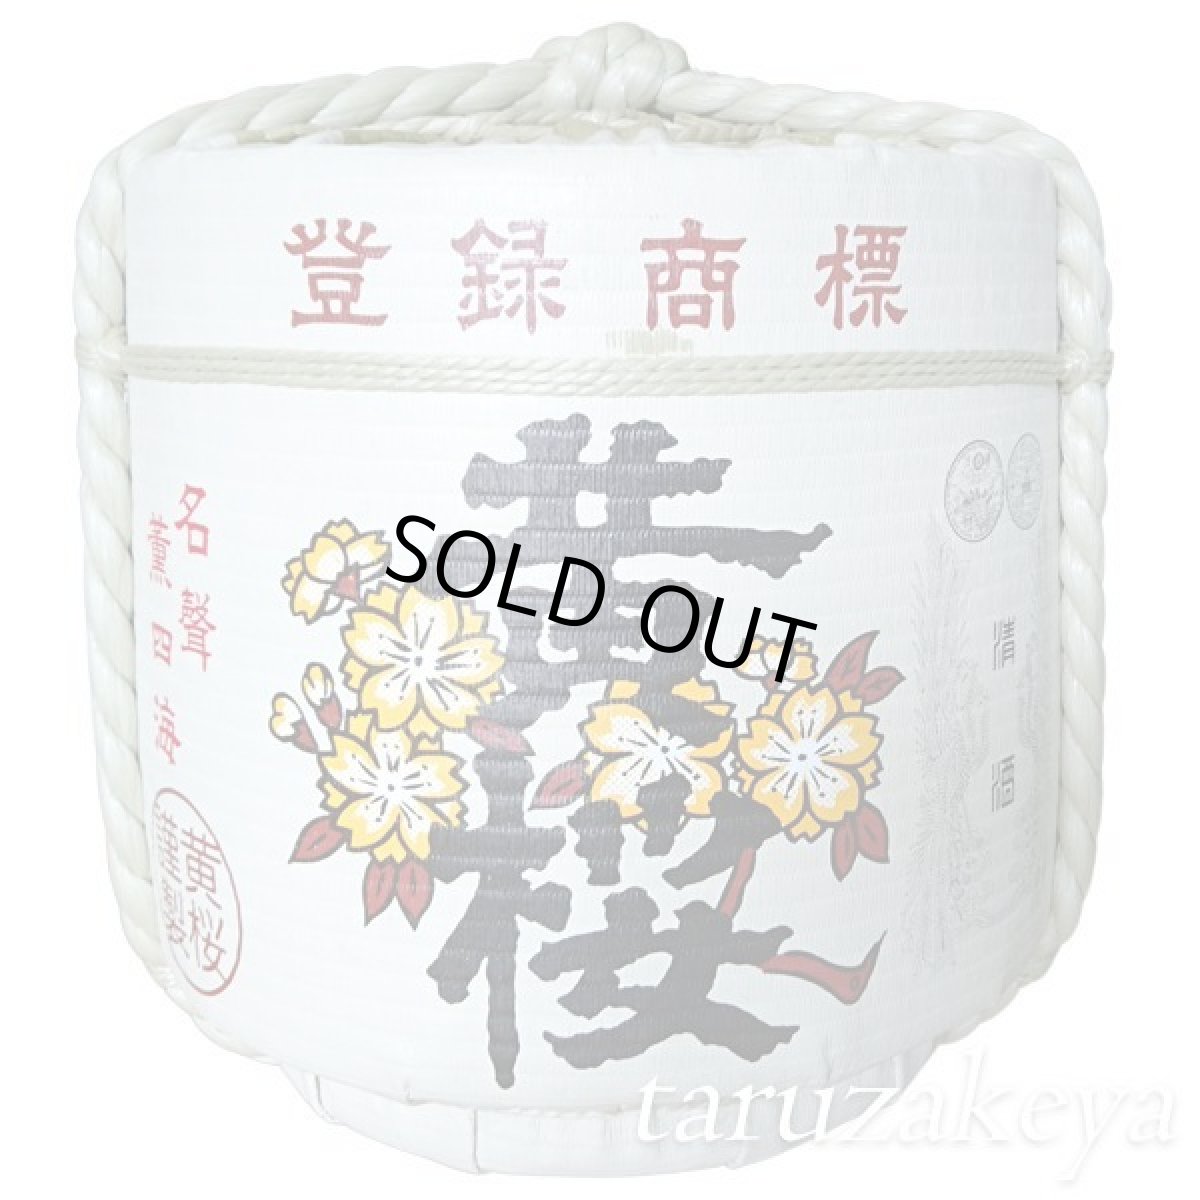 画像1: 飾り樽 黄桜 4斗樽 72Lsize ディスプレイ樽 Japanese sake decorative barrel 樽酒 海外発送 (1)